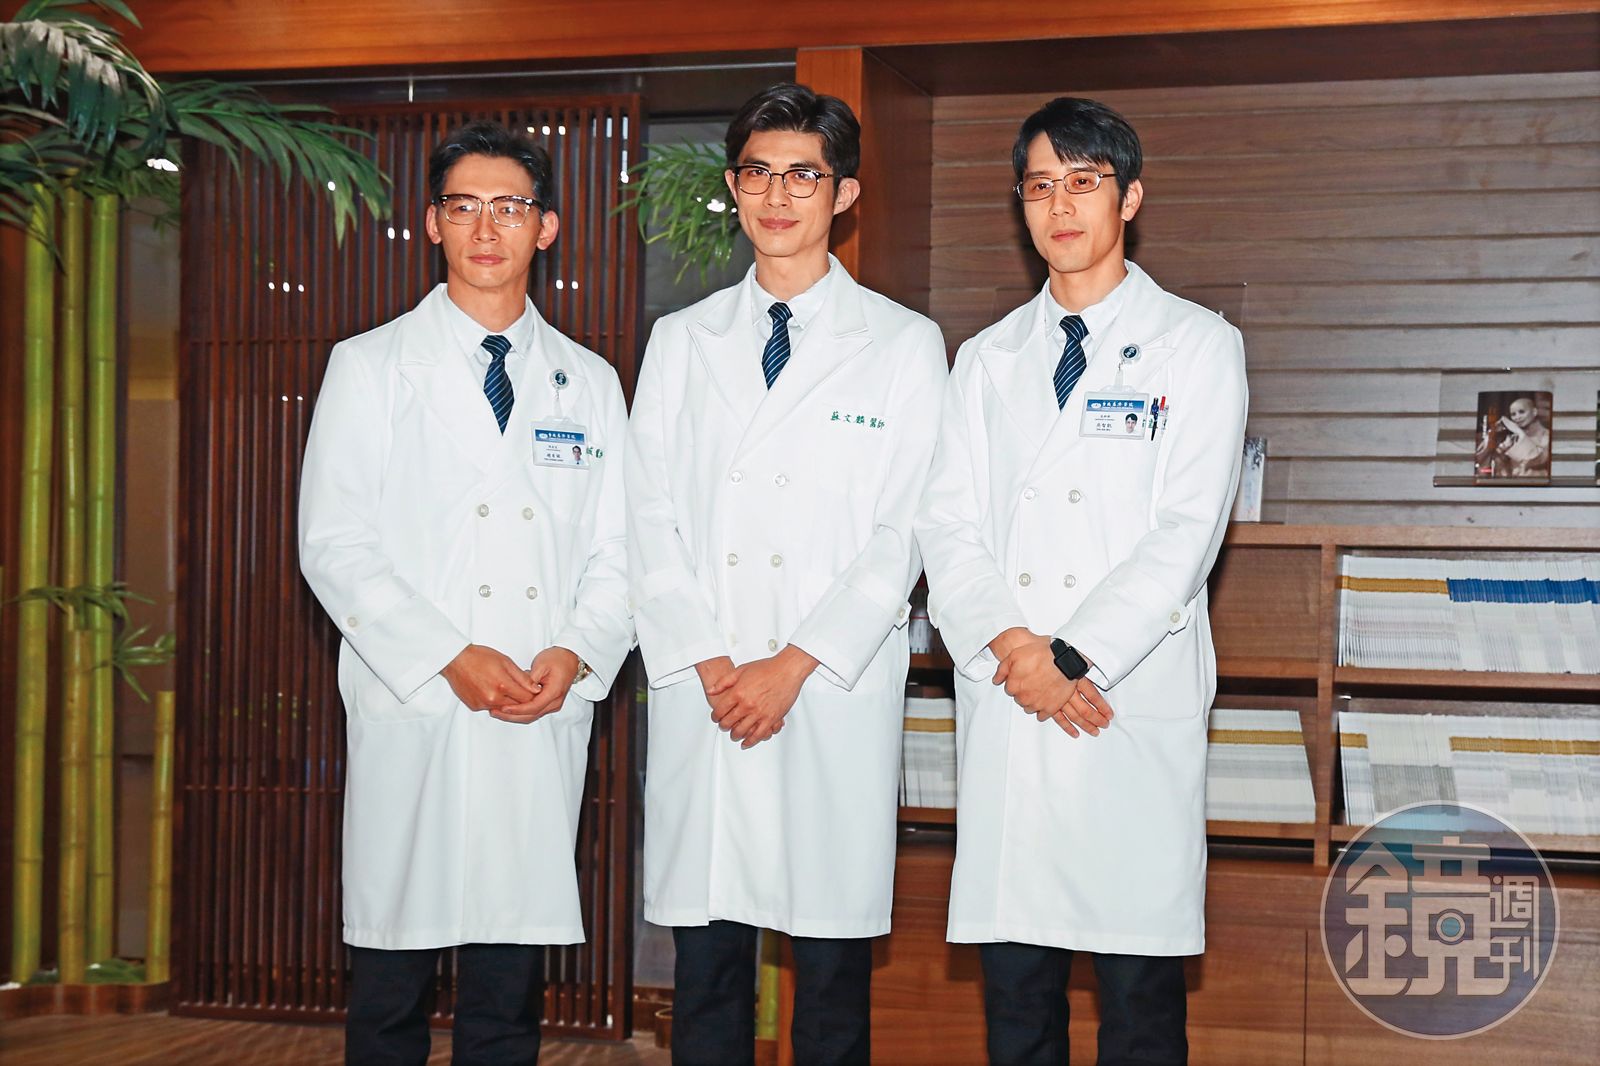 温昇豪（左）近期在新戲《打怪任務》飾演醫院院長，和梁正群（中）、胡宇威（右）並肩作戰。